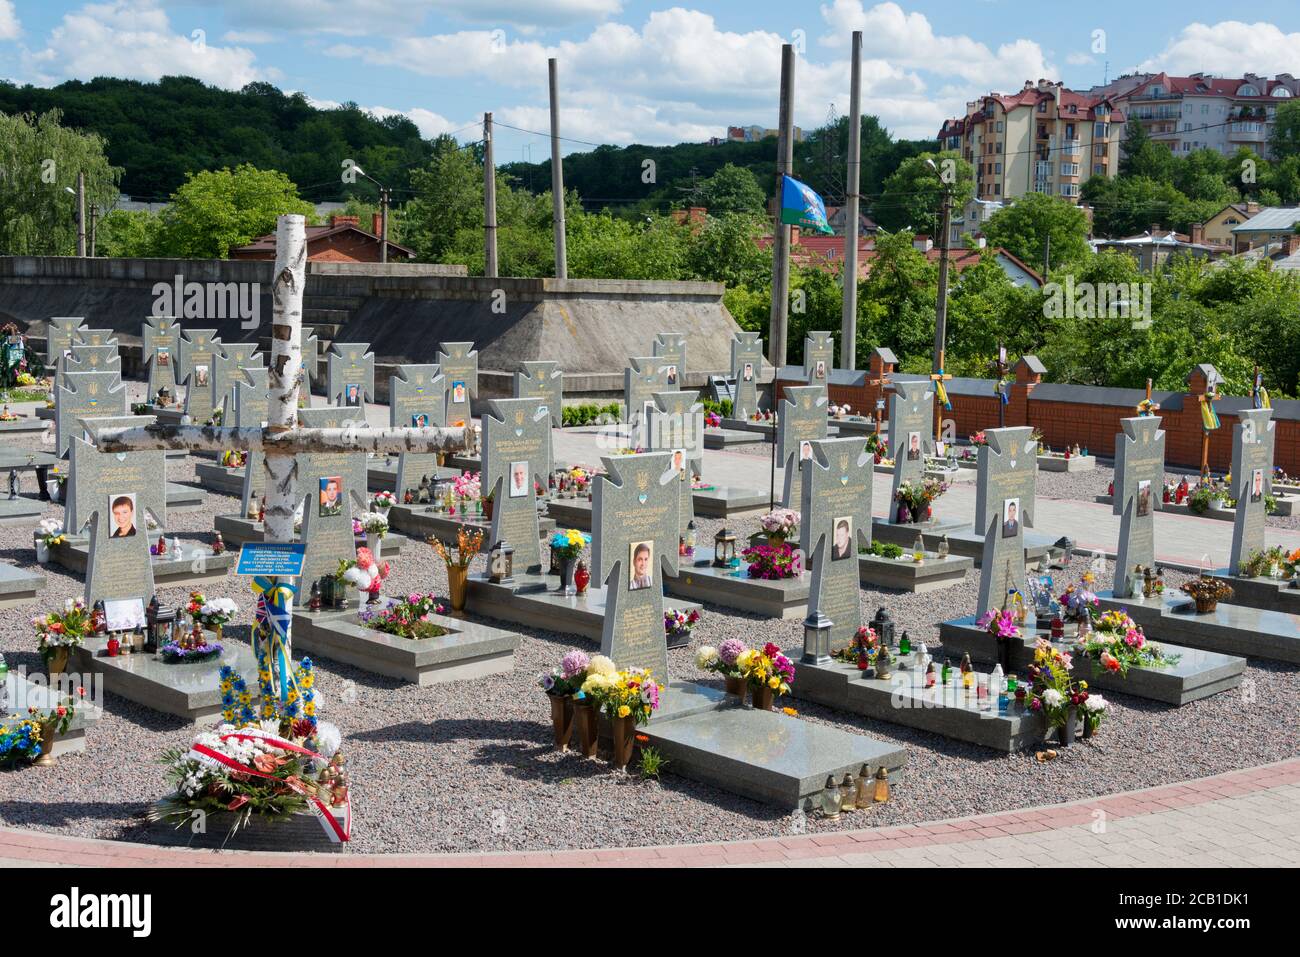 Lviv, Ukraine - Ukrainische National Army Memorial in Lychakiv Friedhof. Ein berühmter und historischer Friedhof in Lviv, Ukraine. Stockfoto